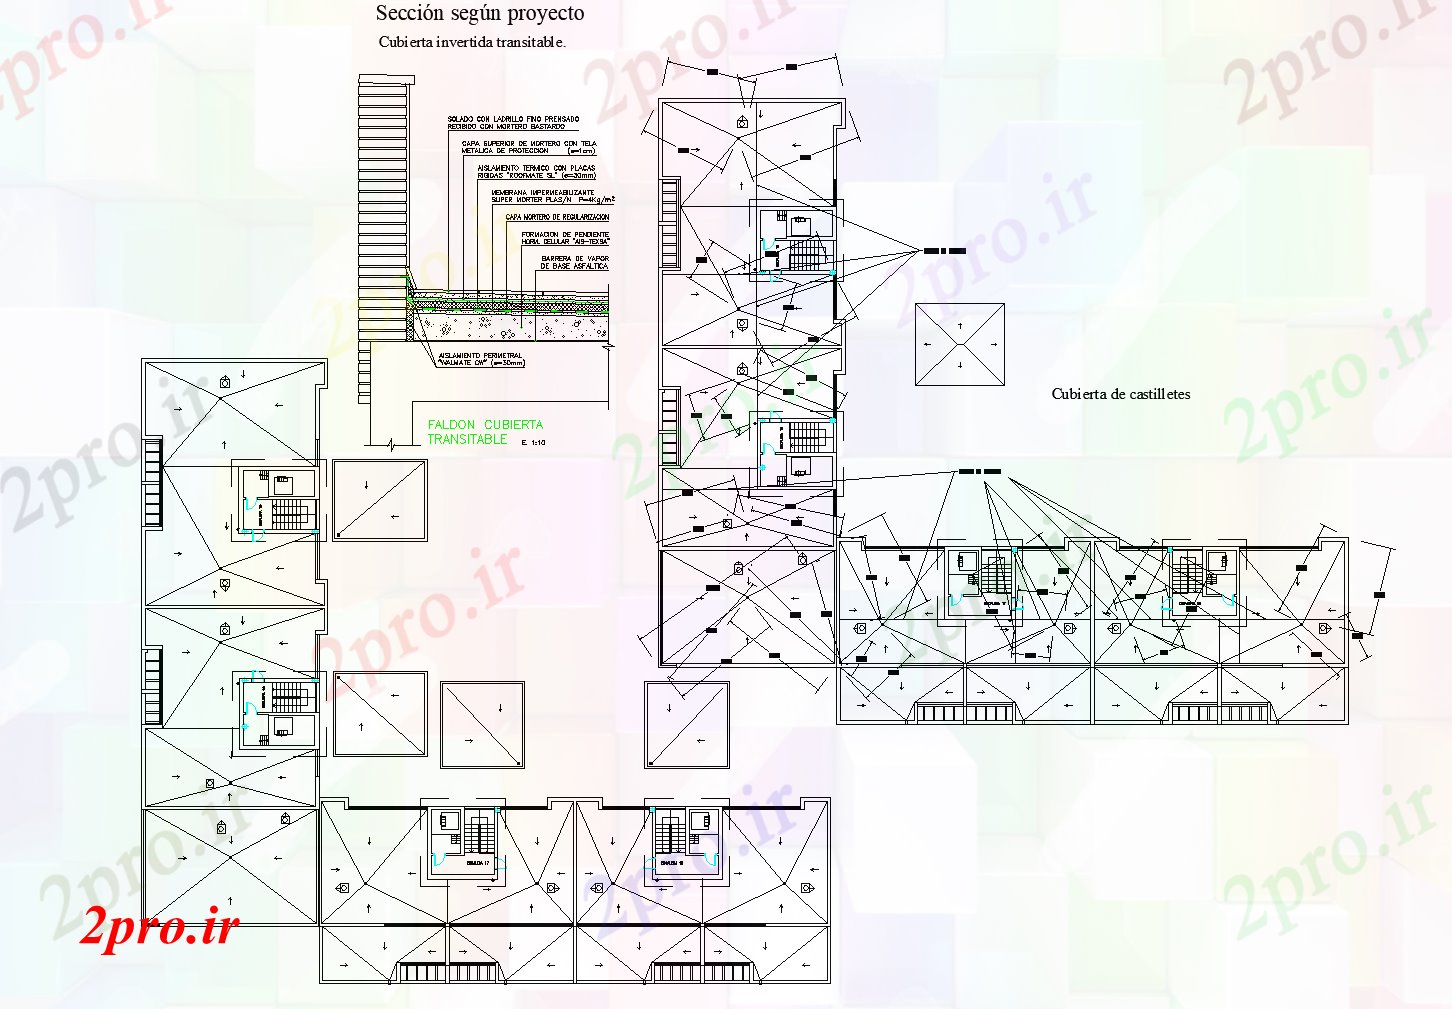 دانلود نقشه جزئیات تیر مفصل بخش ساخت و ساز طرحی جزئیات (کد74073)